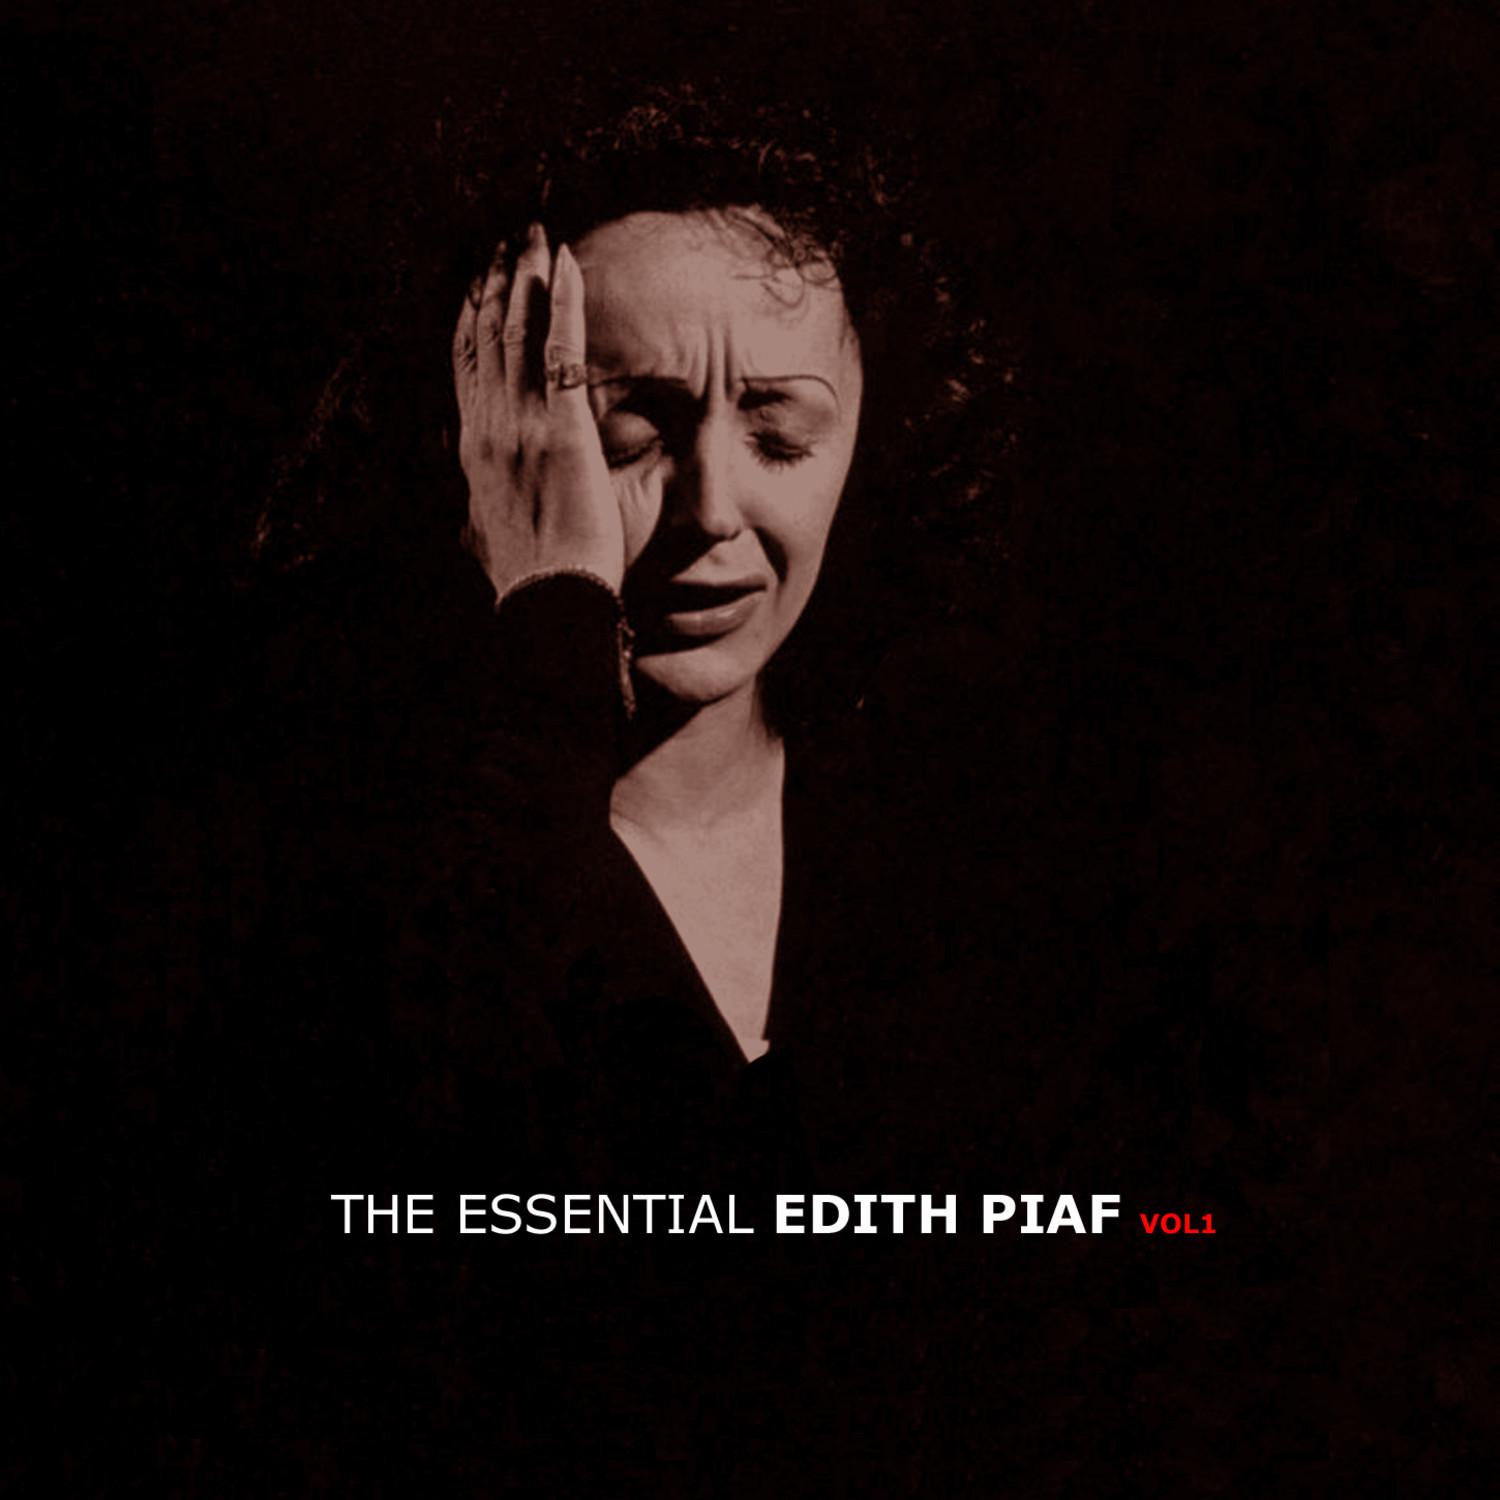 The Essential Edith Piaf Vol 1